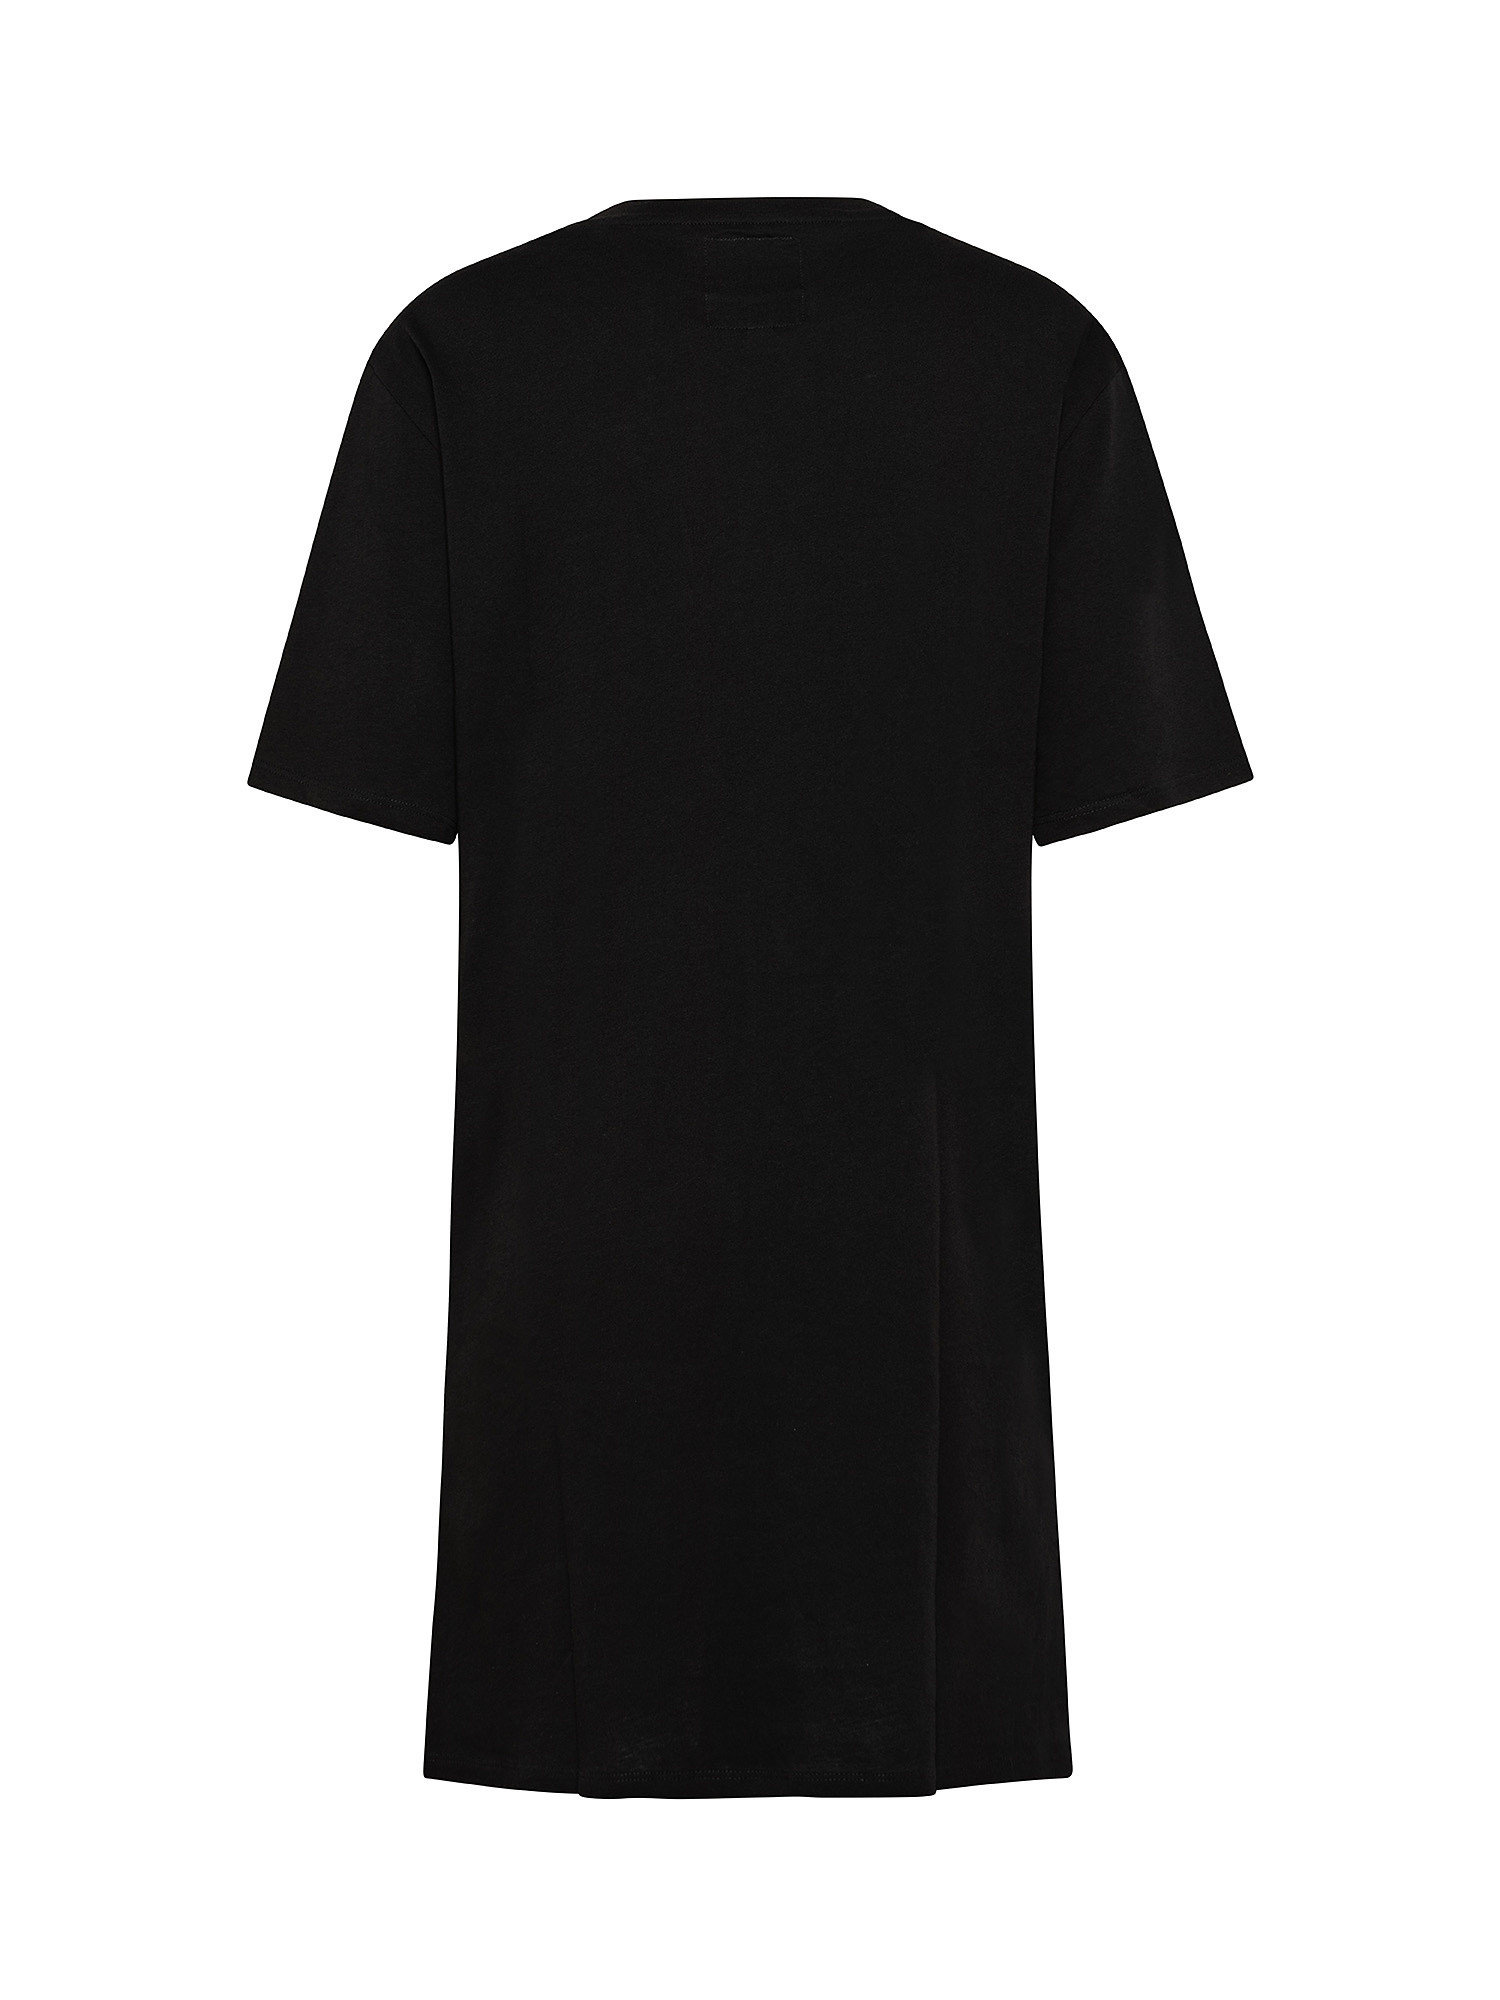 Dress, Black, large image number 1